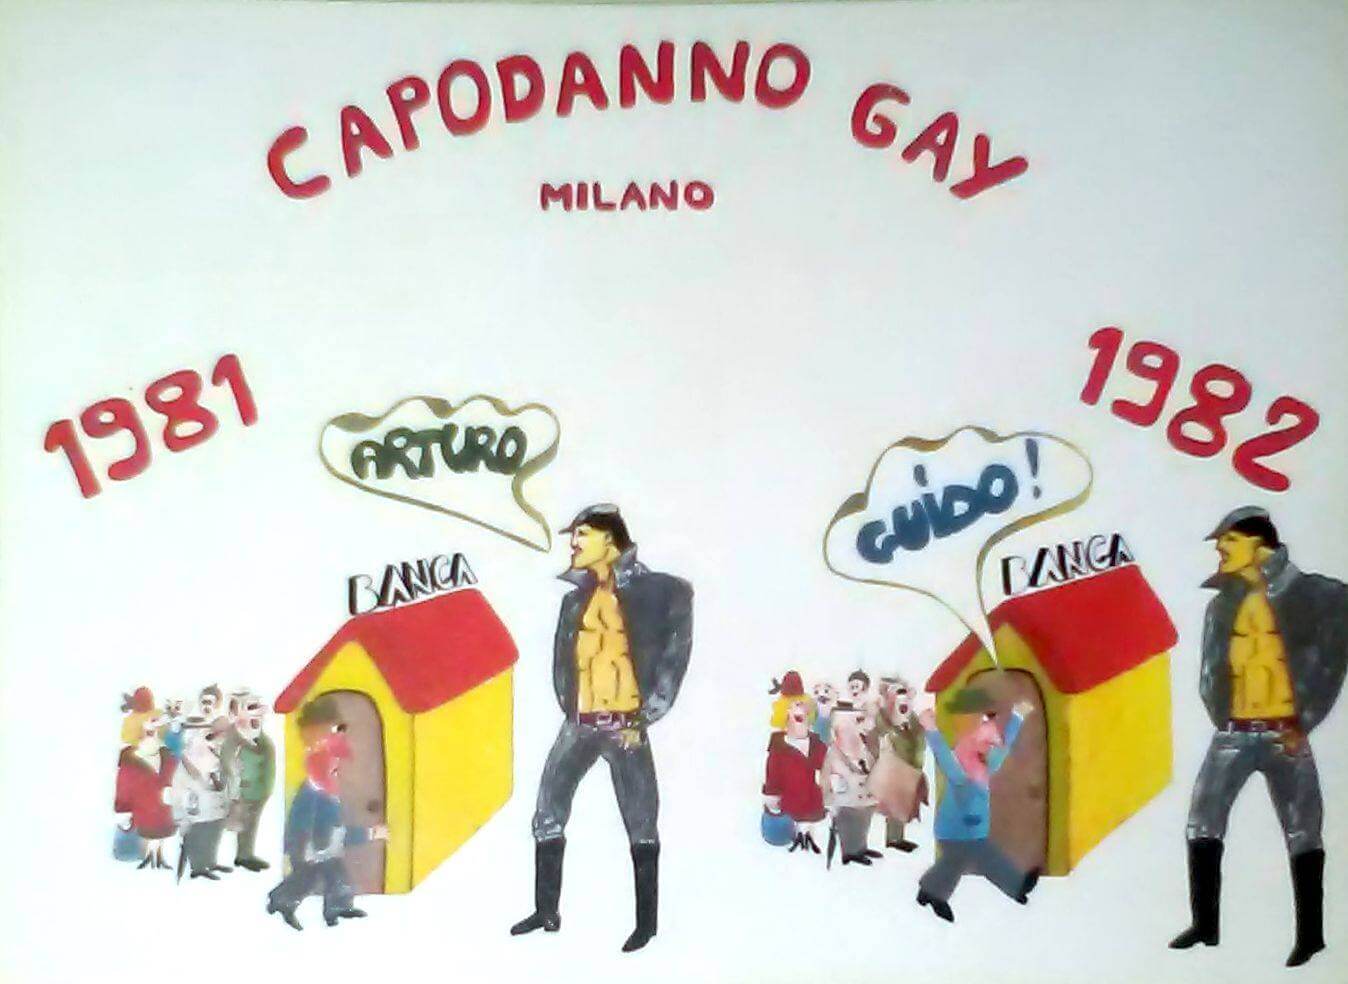 Cartolina per pubblicizzare la festa di capodanno organizzata a Milano dal Fuori!.